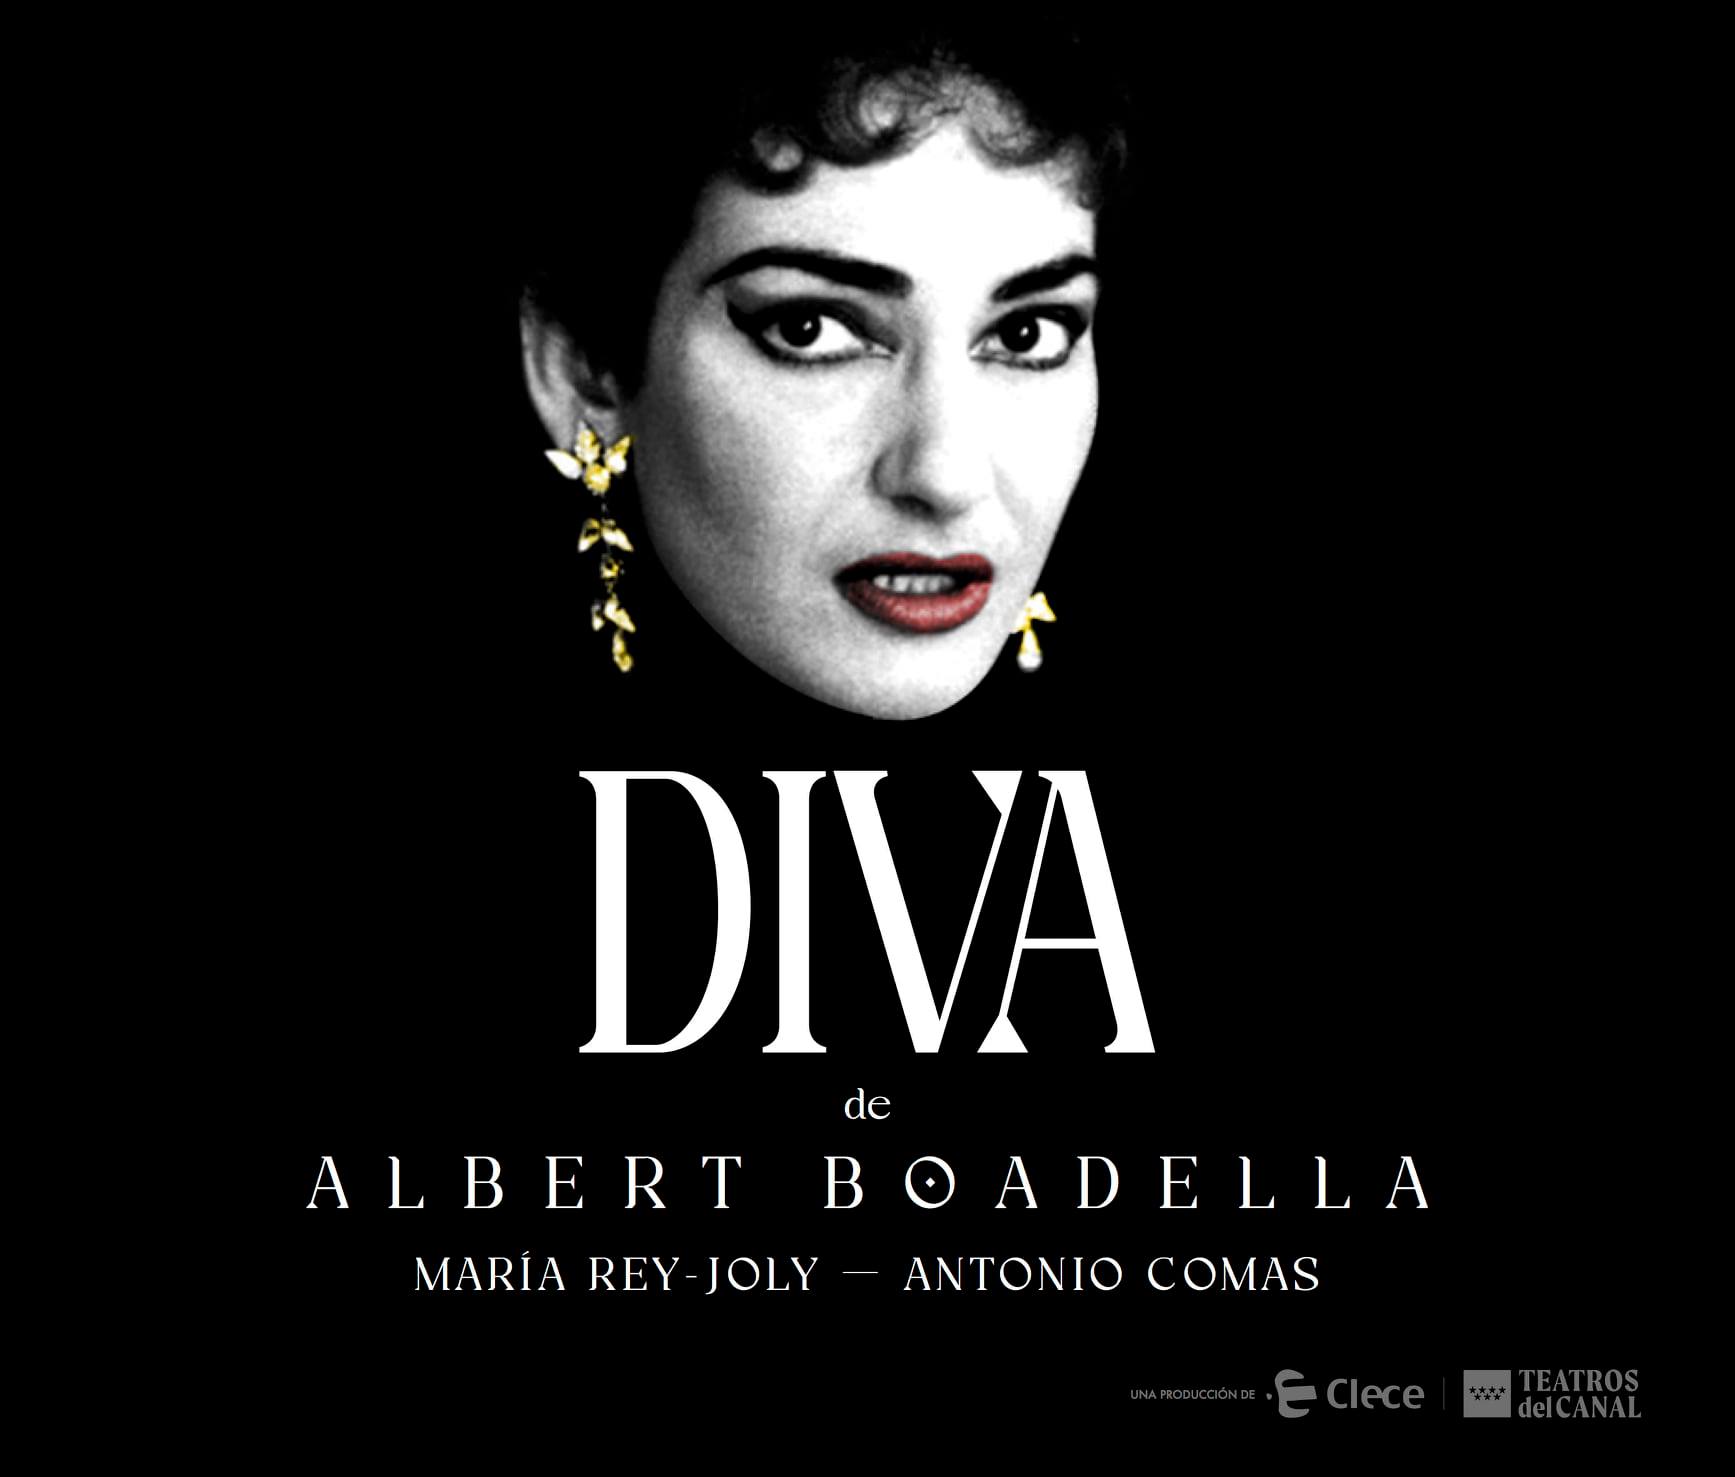 Albert Boadella regresa a Avilés para estrenar Diva, una representación de los últimos años de Maria Callas